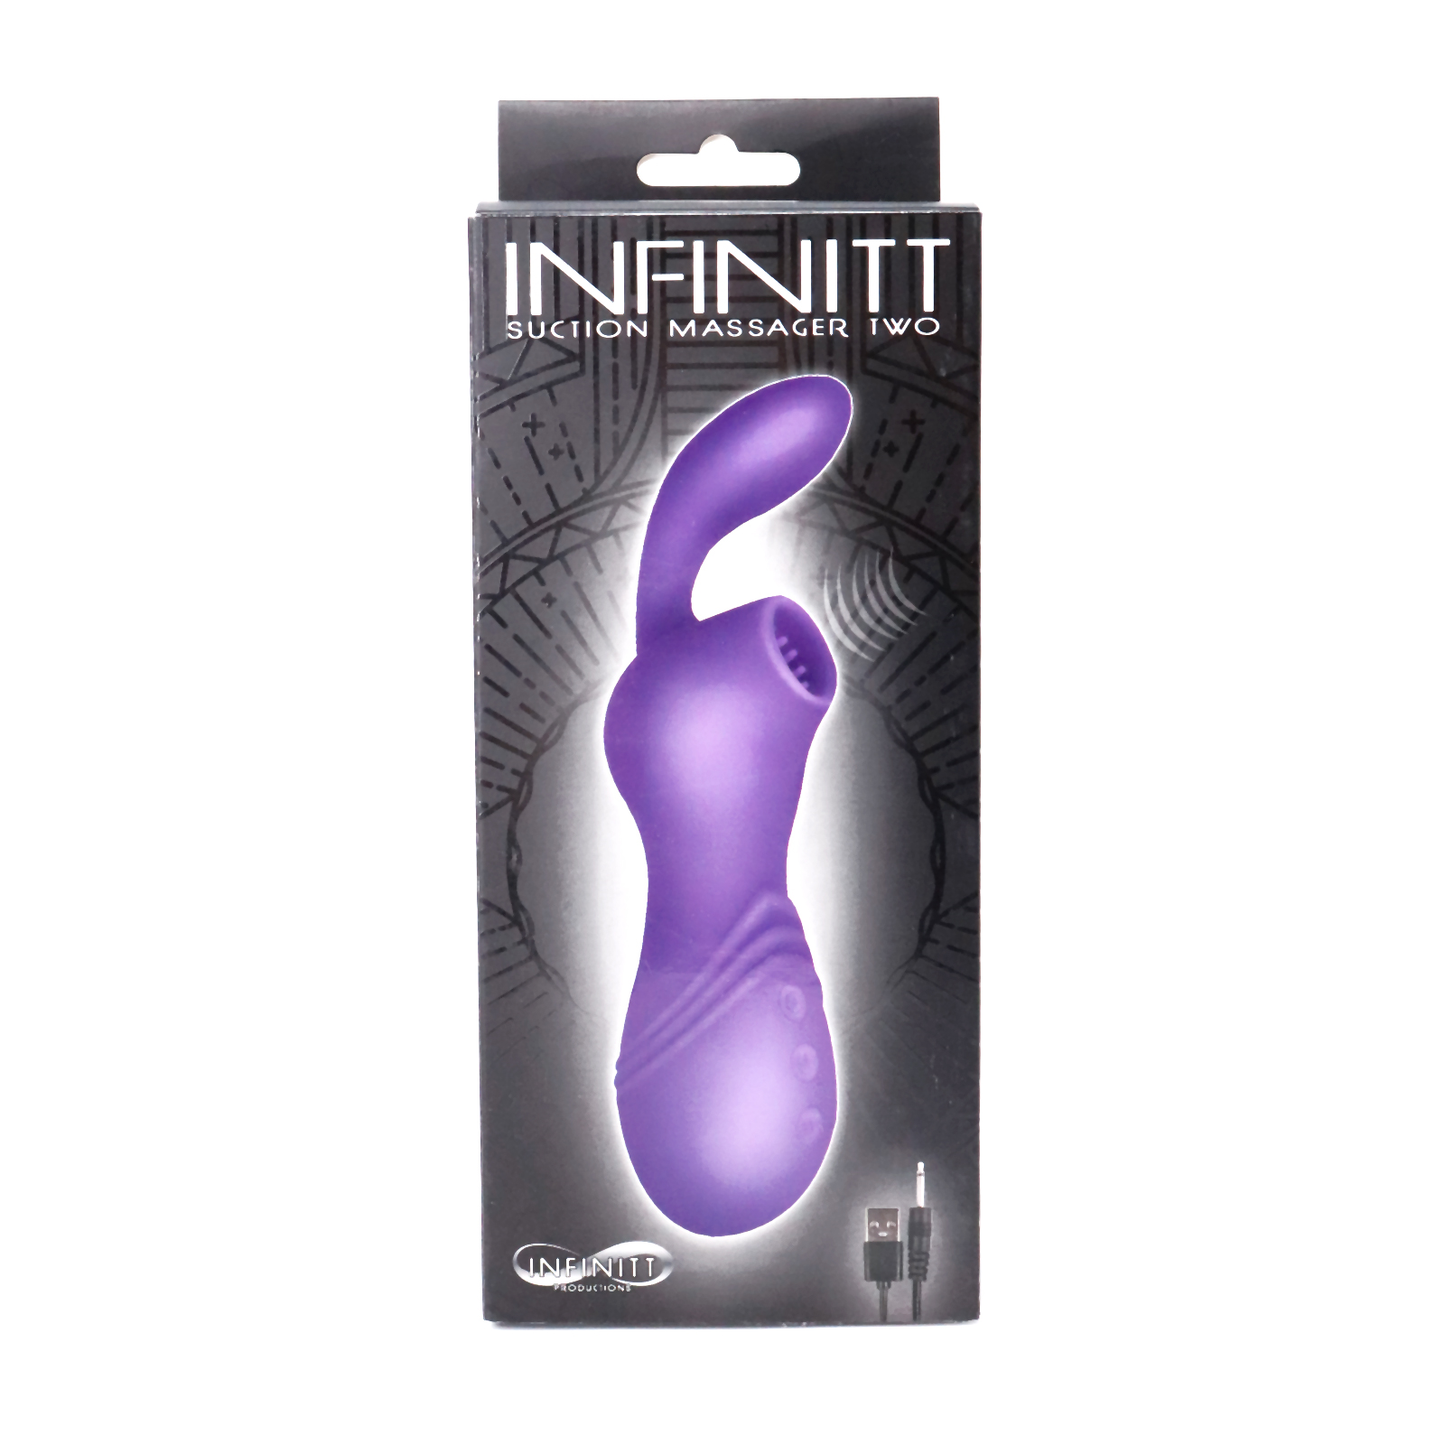 Vibrador con Succionador de Clitoris Recargable Infinitt